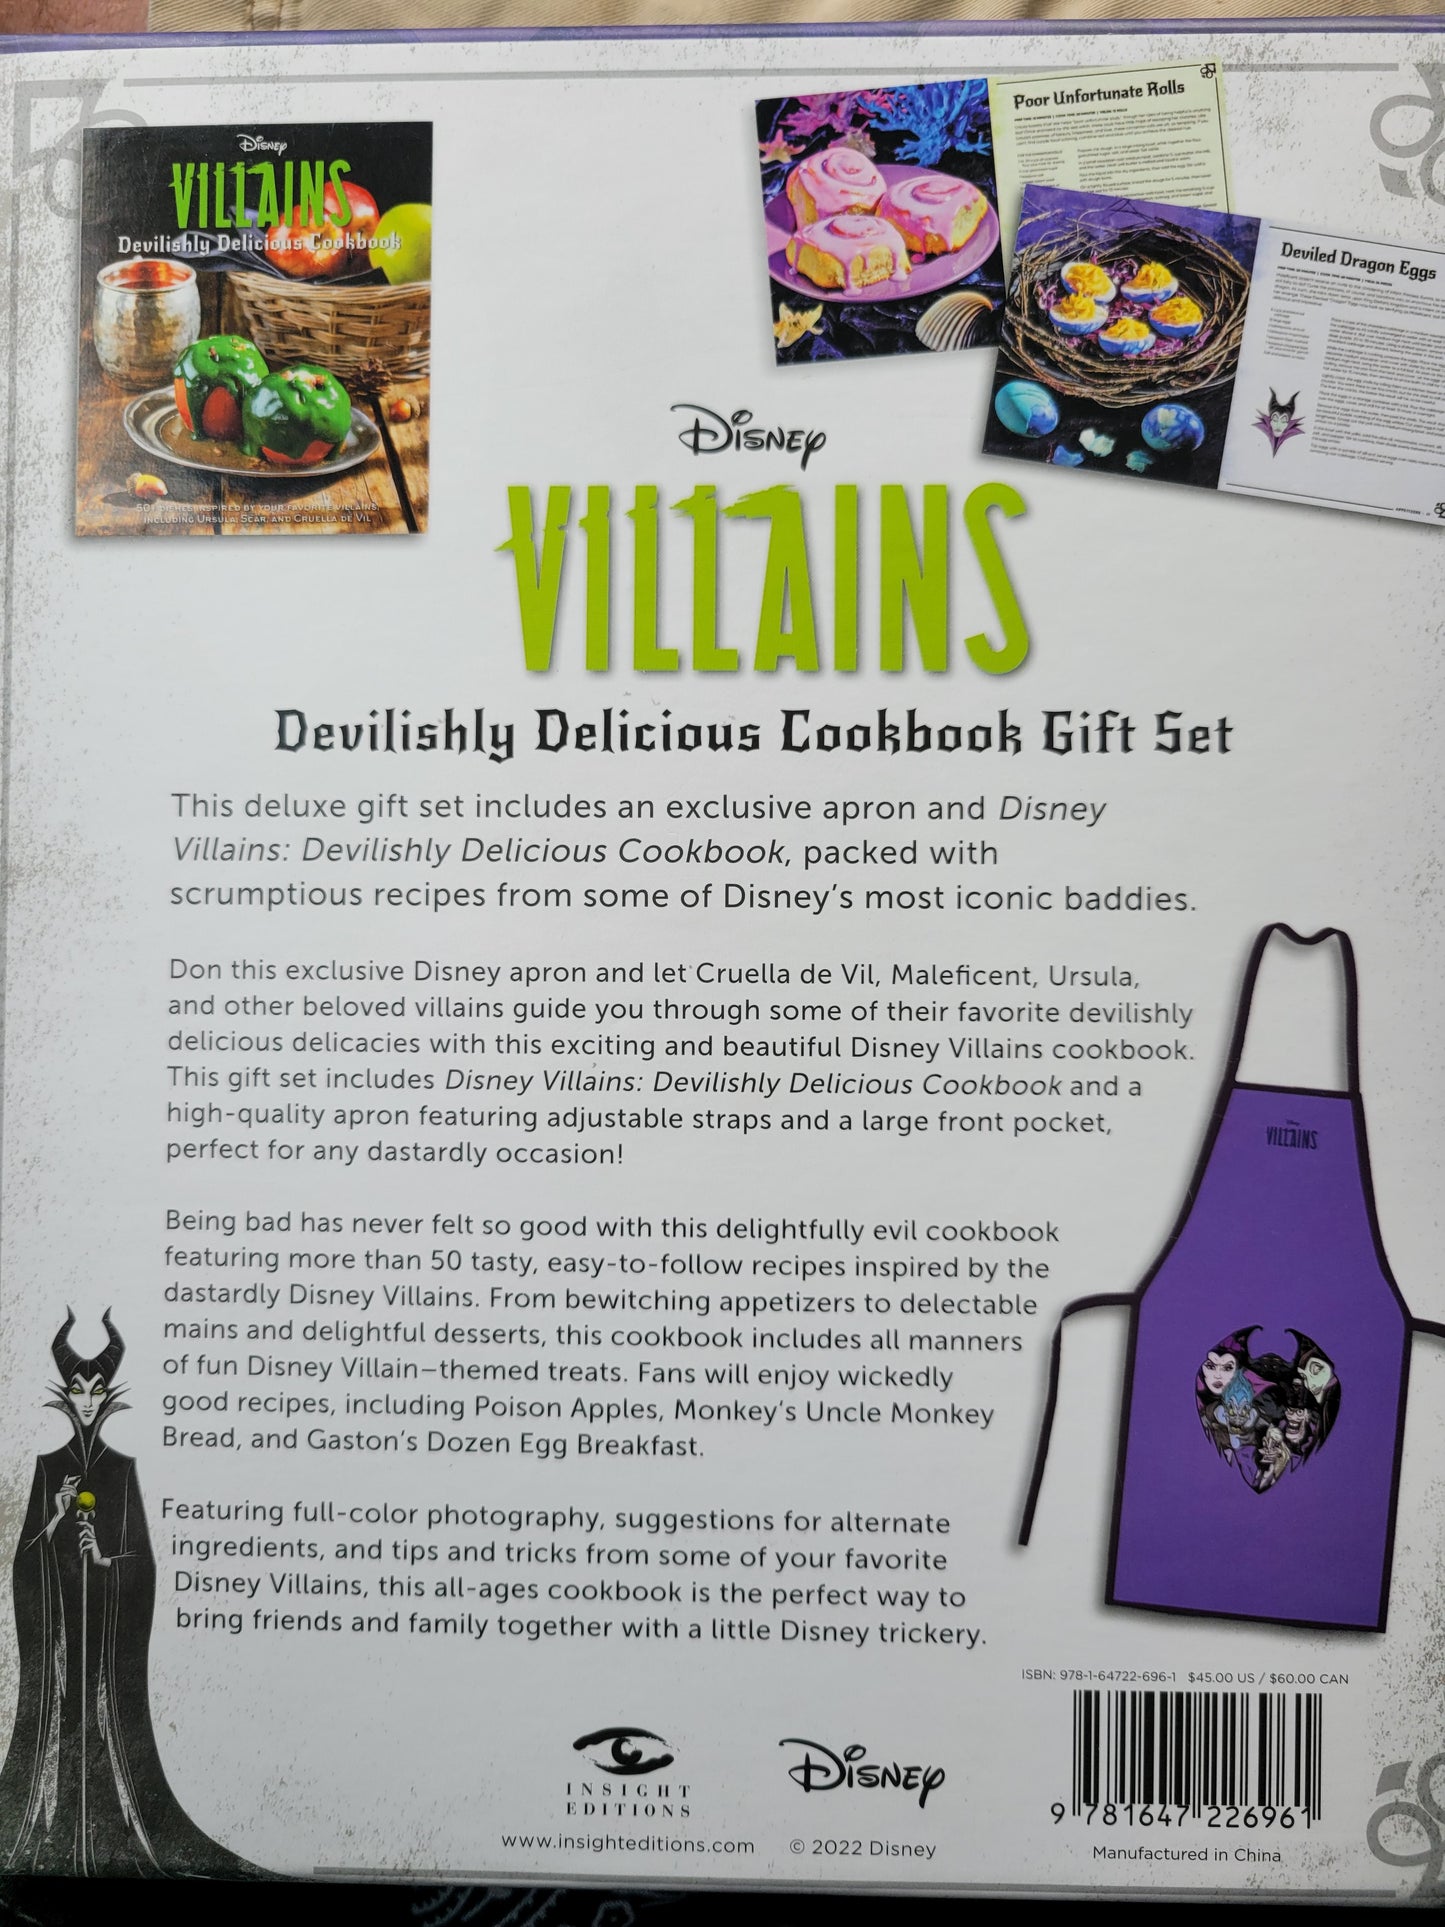 Devilishly Delicious Cookbook Gift Set